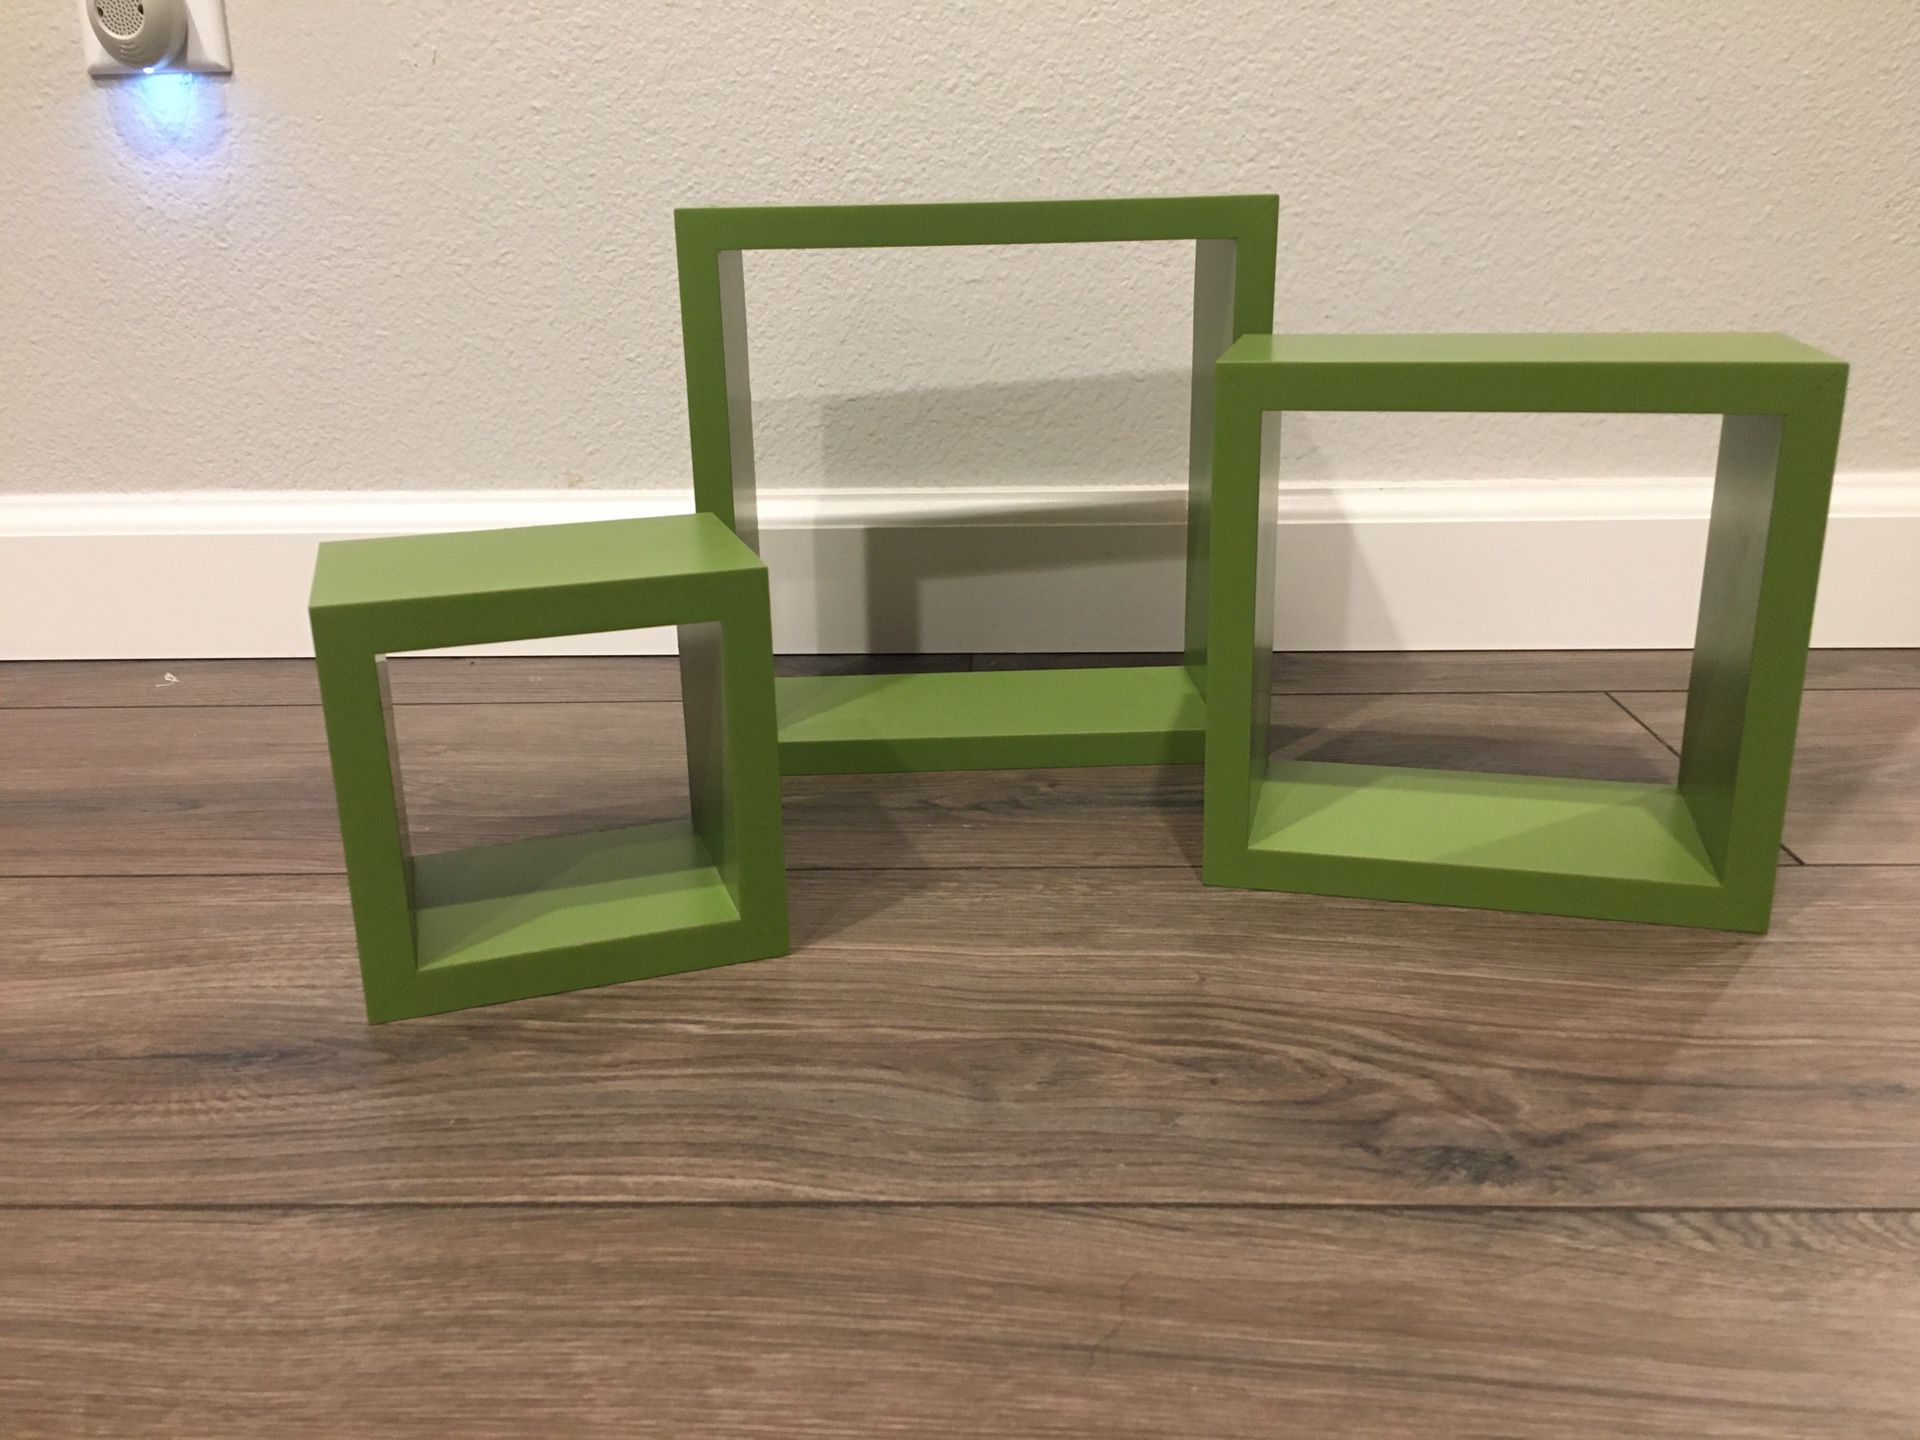 Green wall shelves